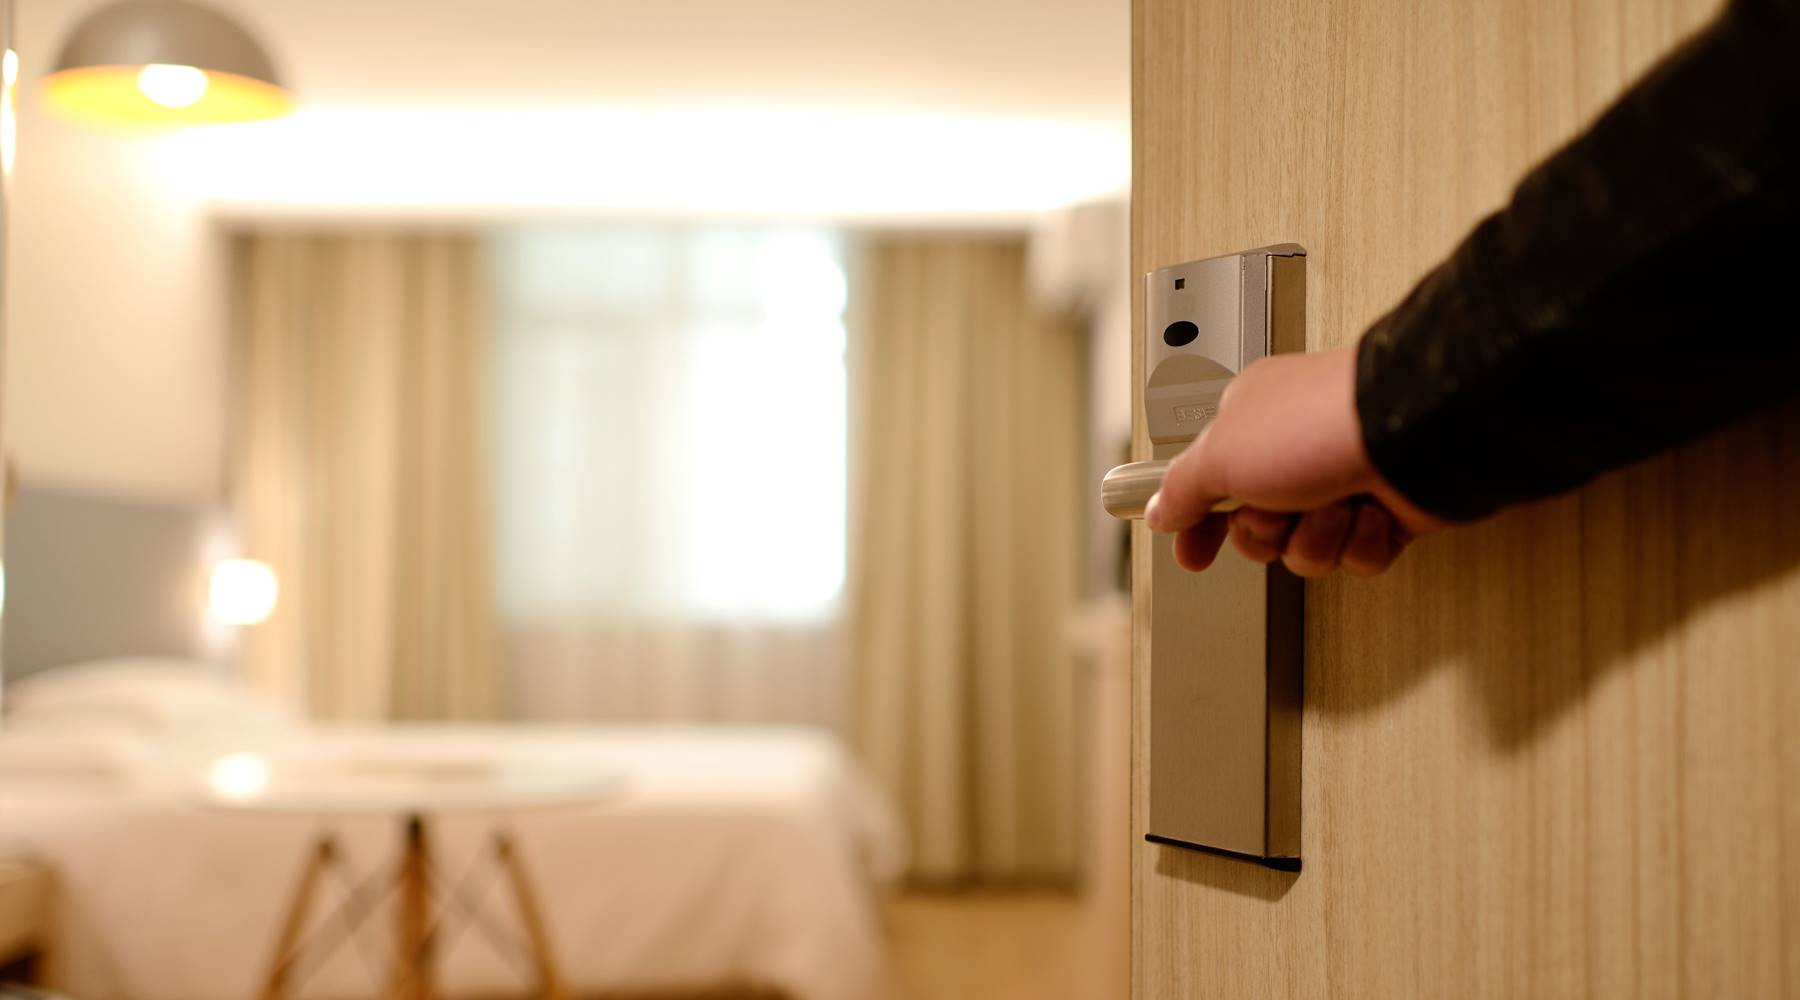 Hand opening door to show hotel bed.